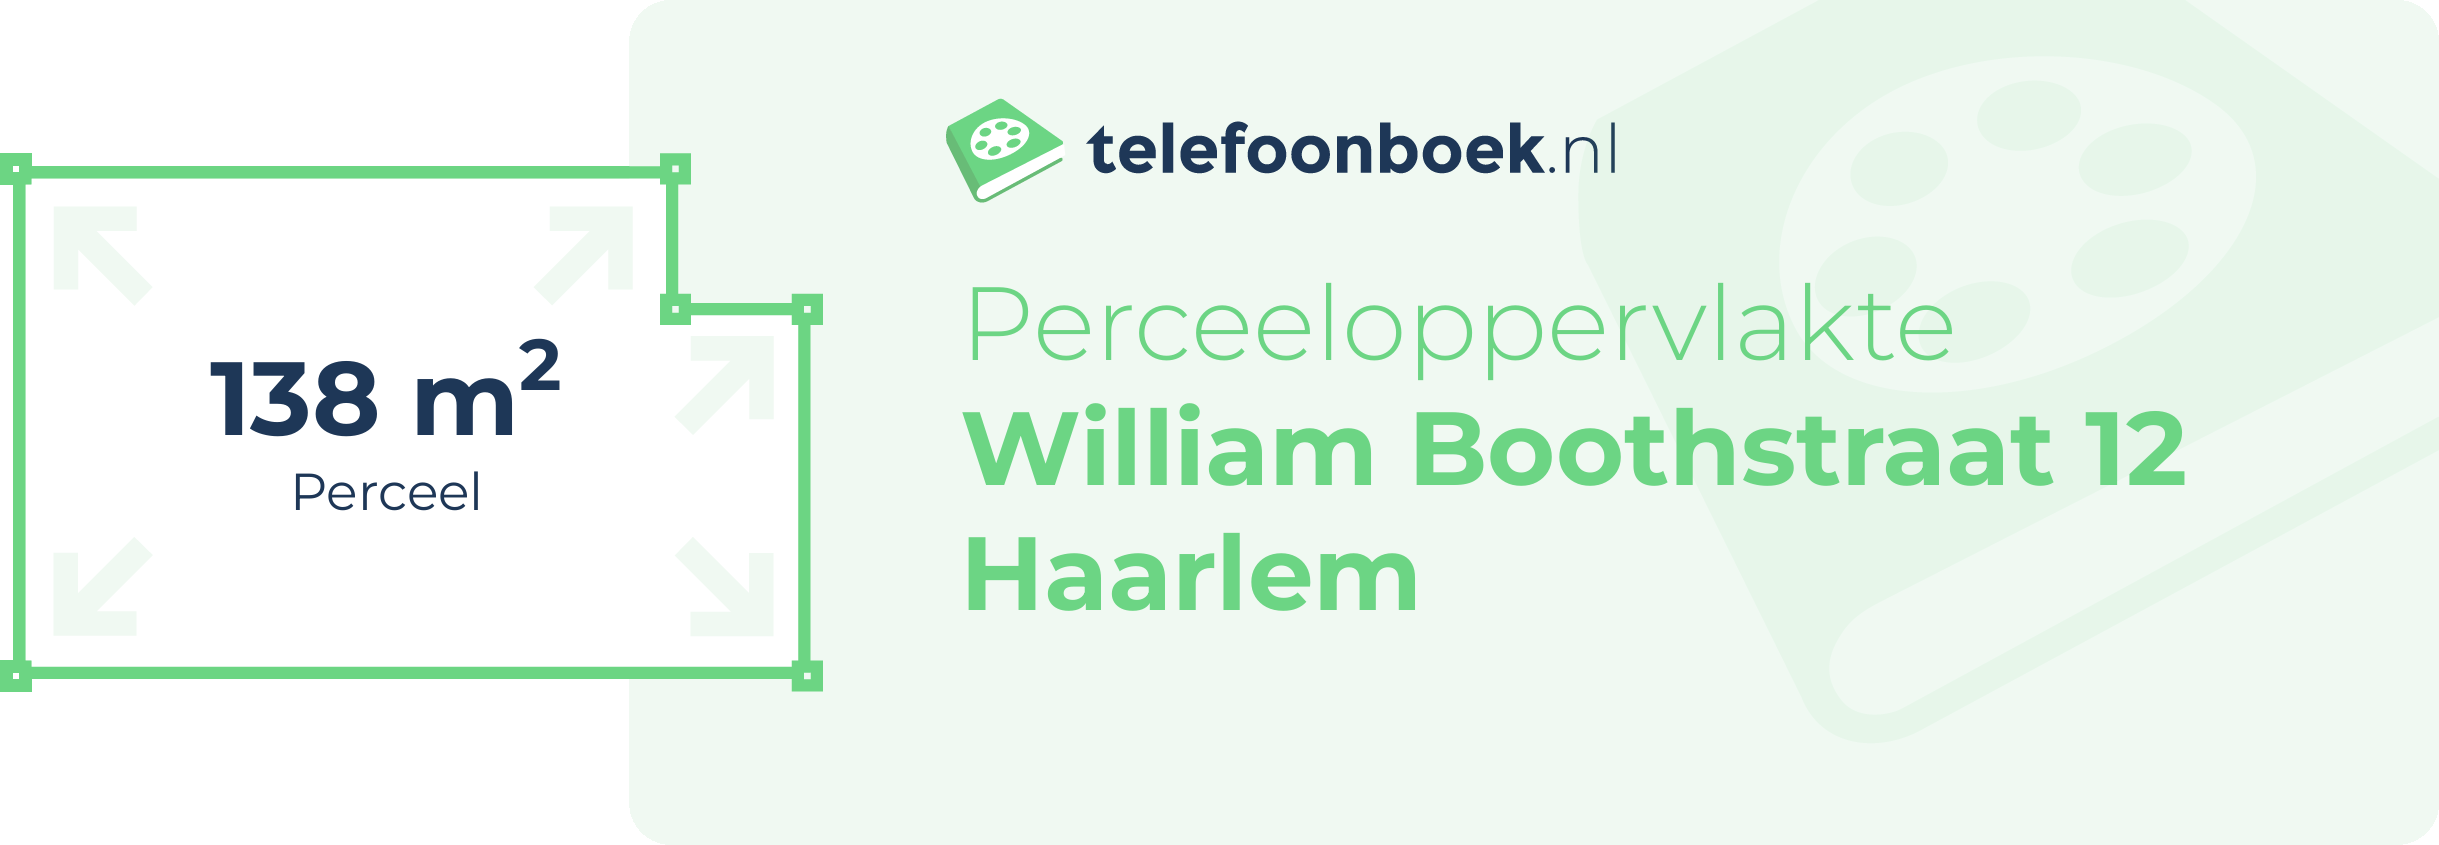 Perceeloppervlakte William Boothstraat 12 Haarlem